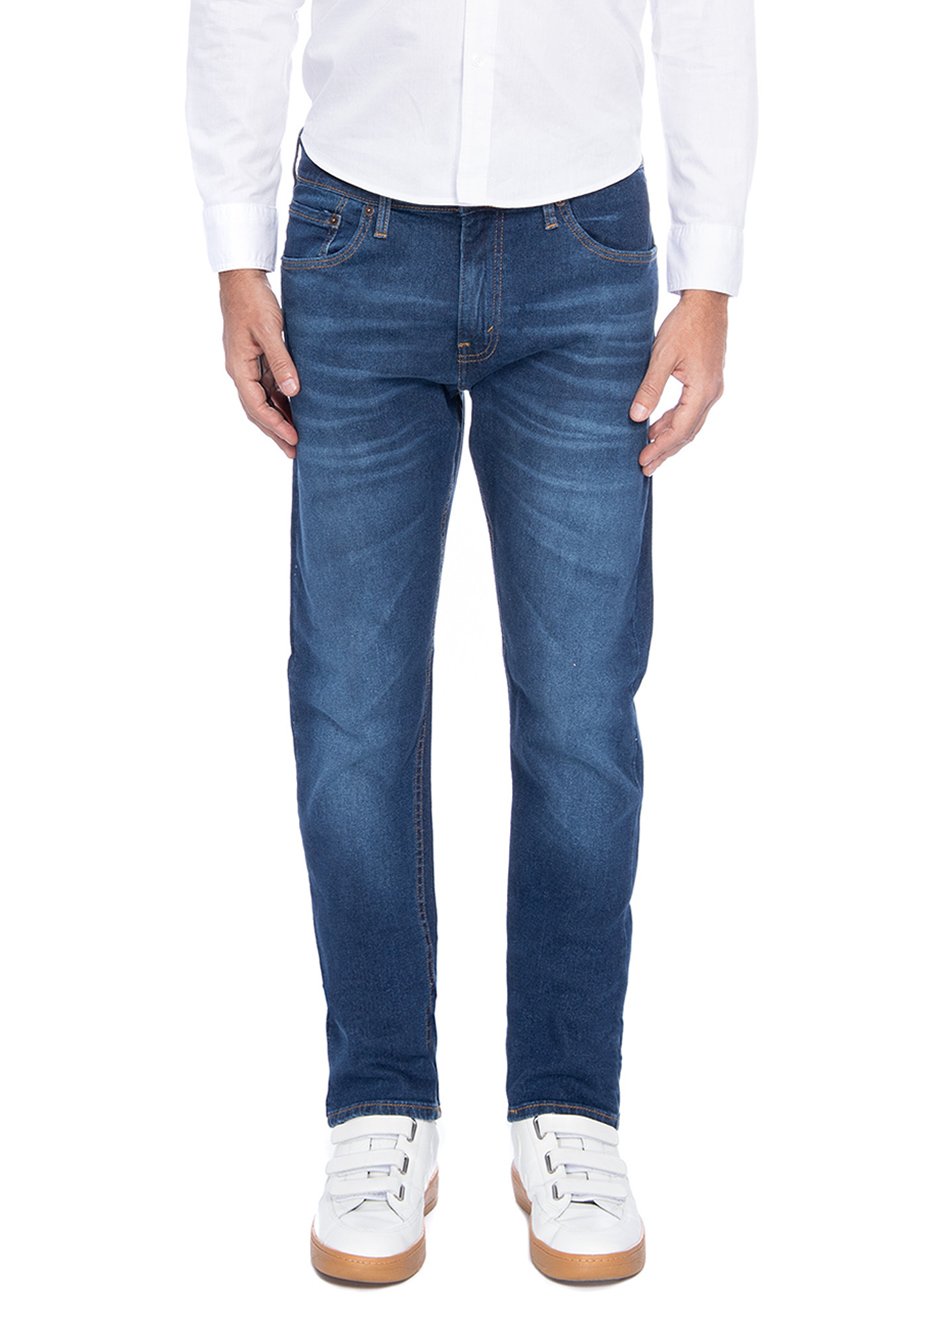 Calça Jeans Levis Masculina 512 Slim Taper Stretch Azul Médio